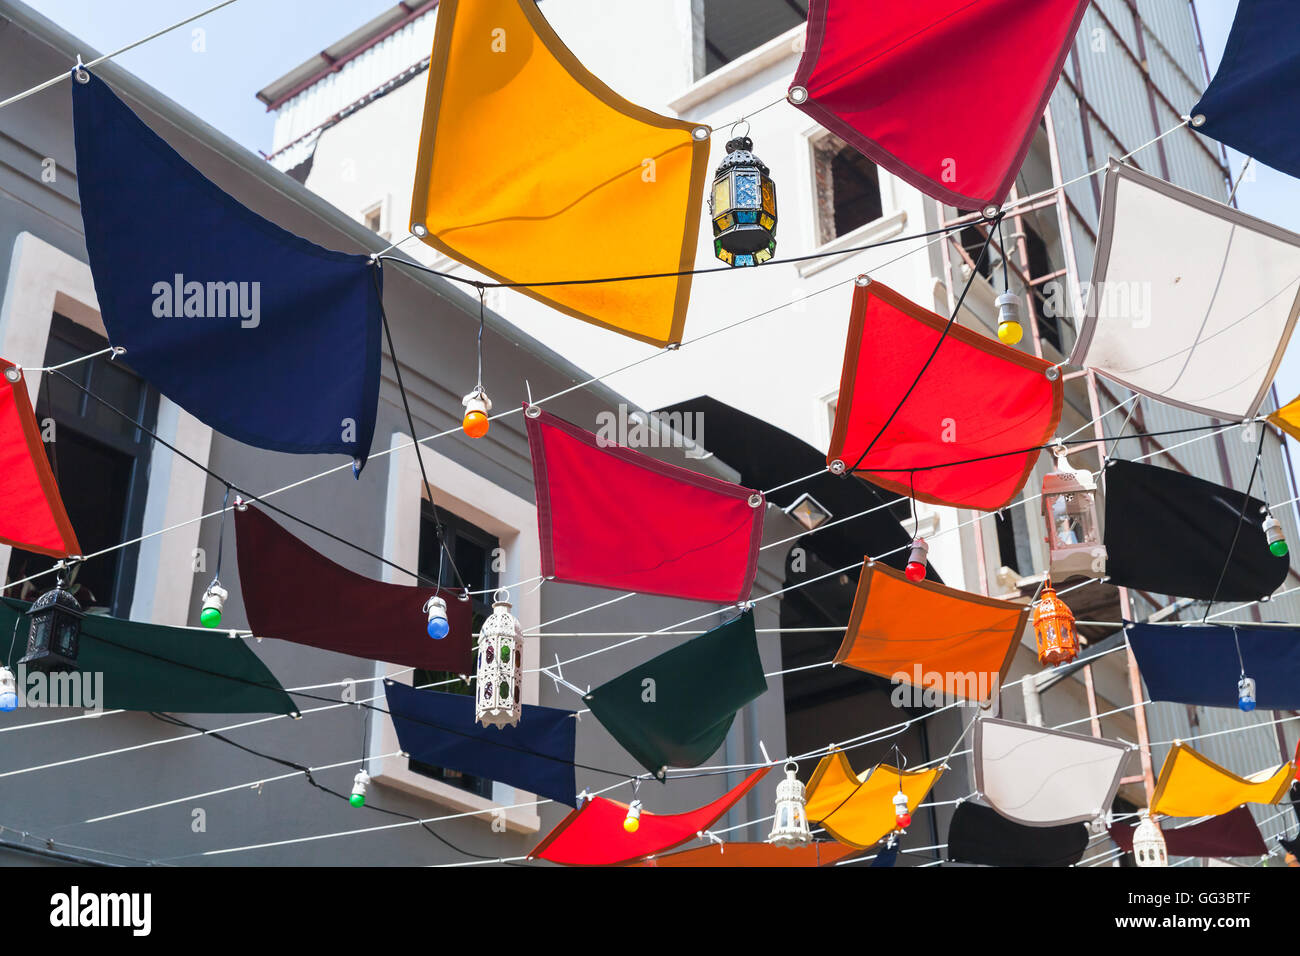 Bandiere colorate e lampade stradali. Istanbul, Turchia Foto Stock